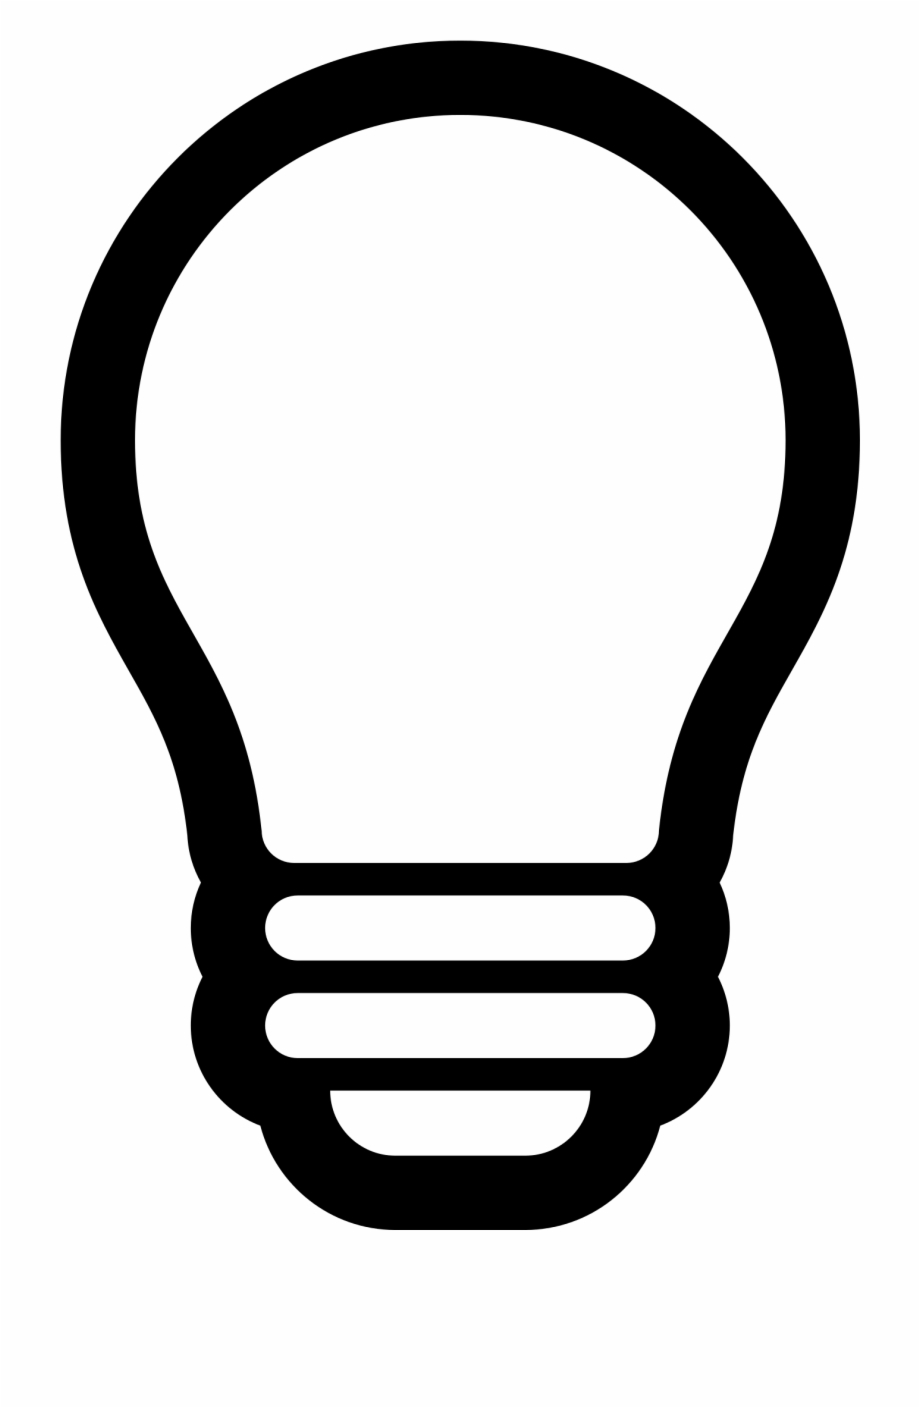 Lightbulb Svg For Free Download On Light Bulb